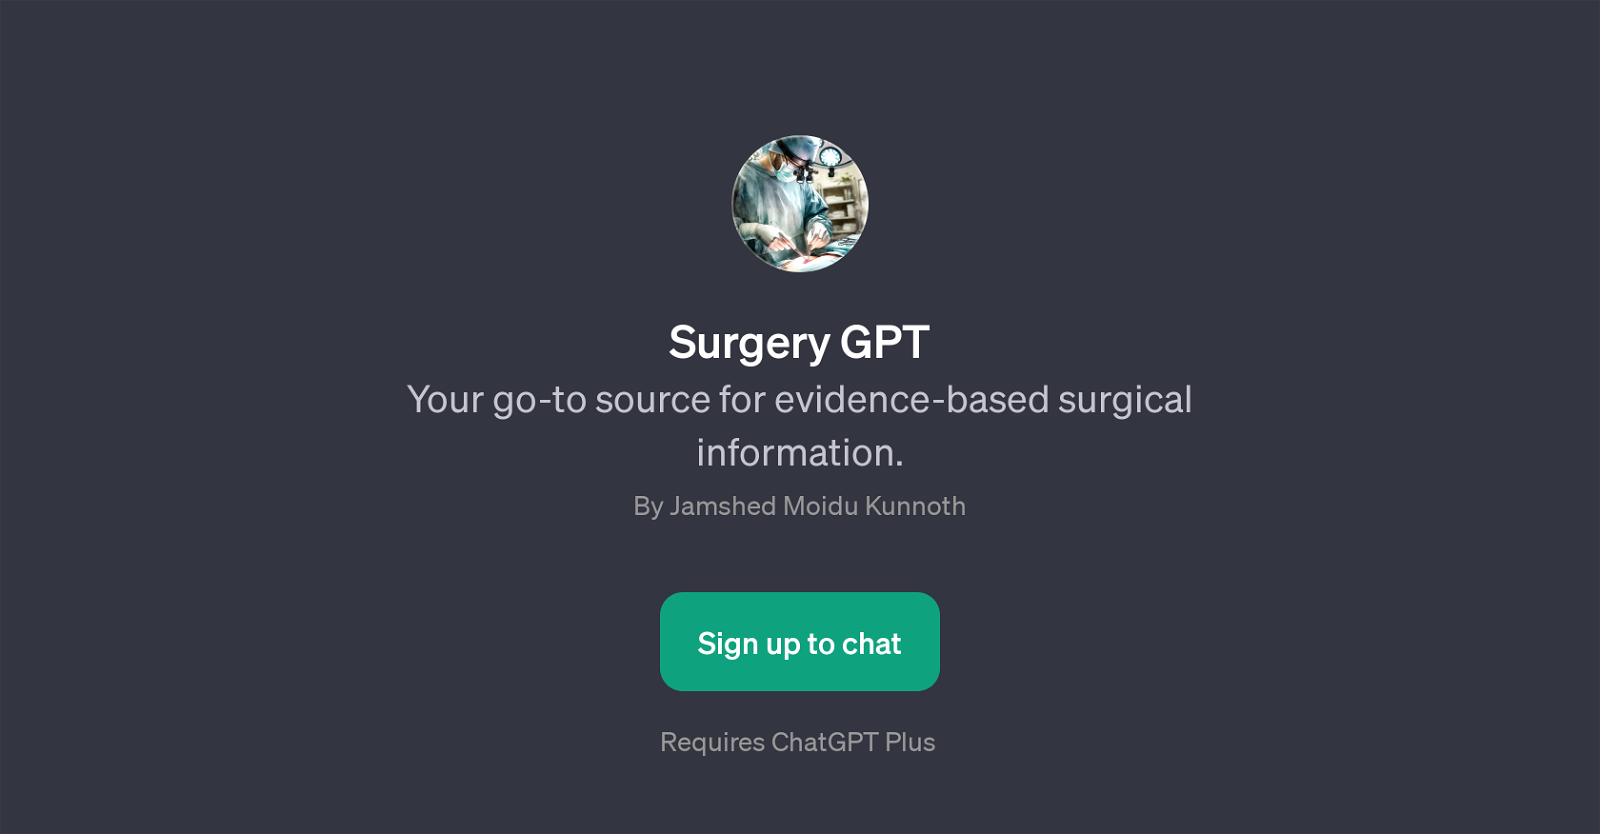 Surgery GPT website